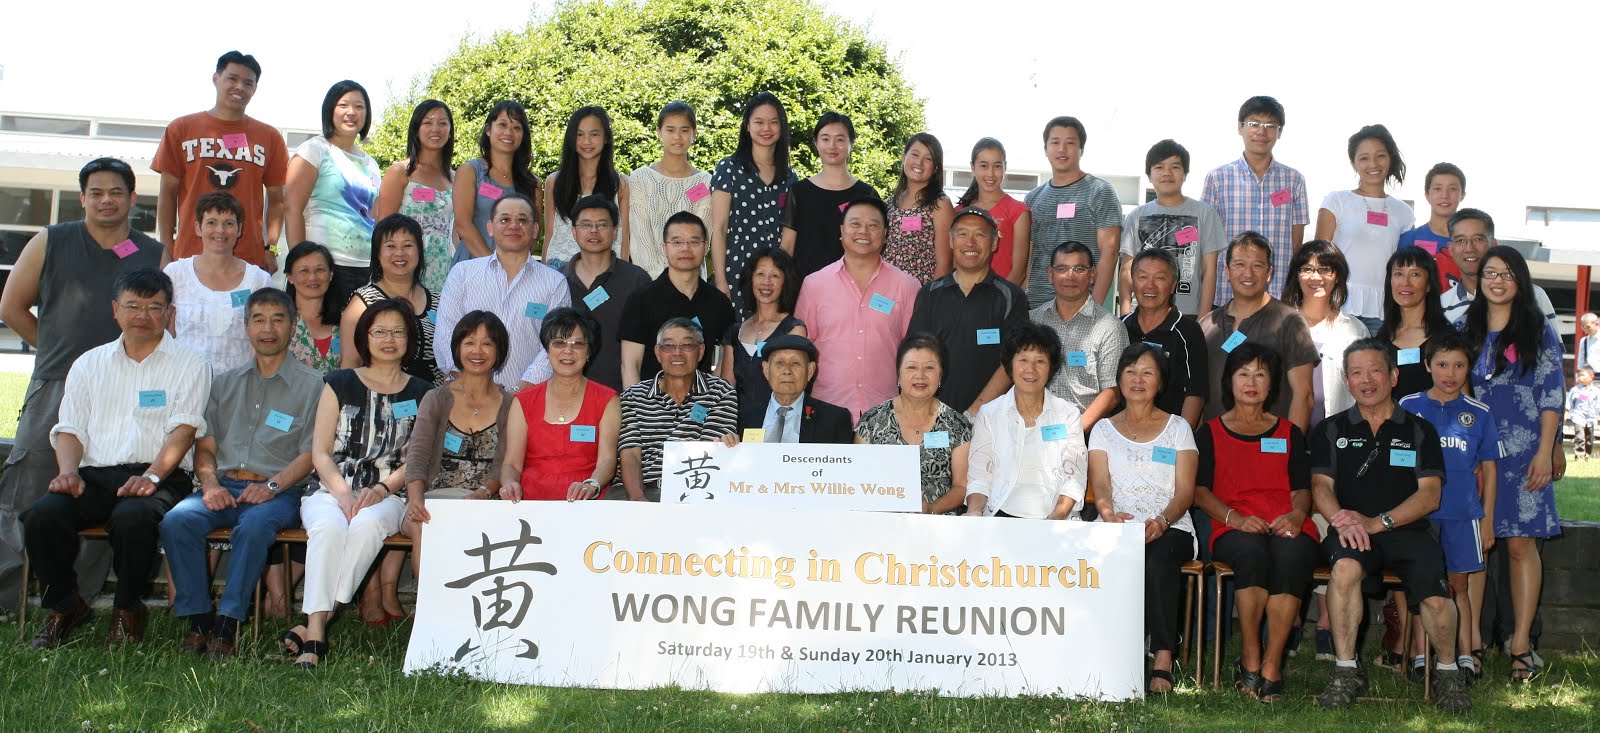 Descendants of Mr & Mrs Willie Wong